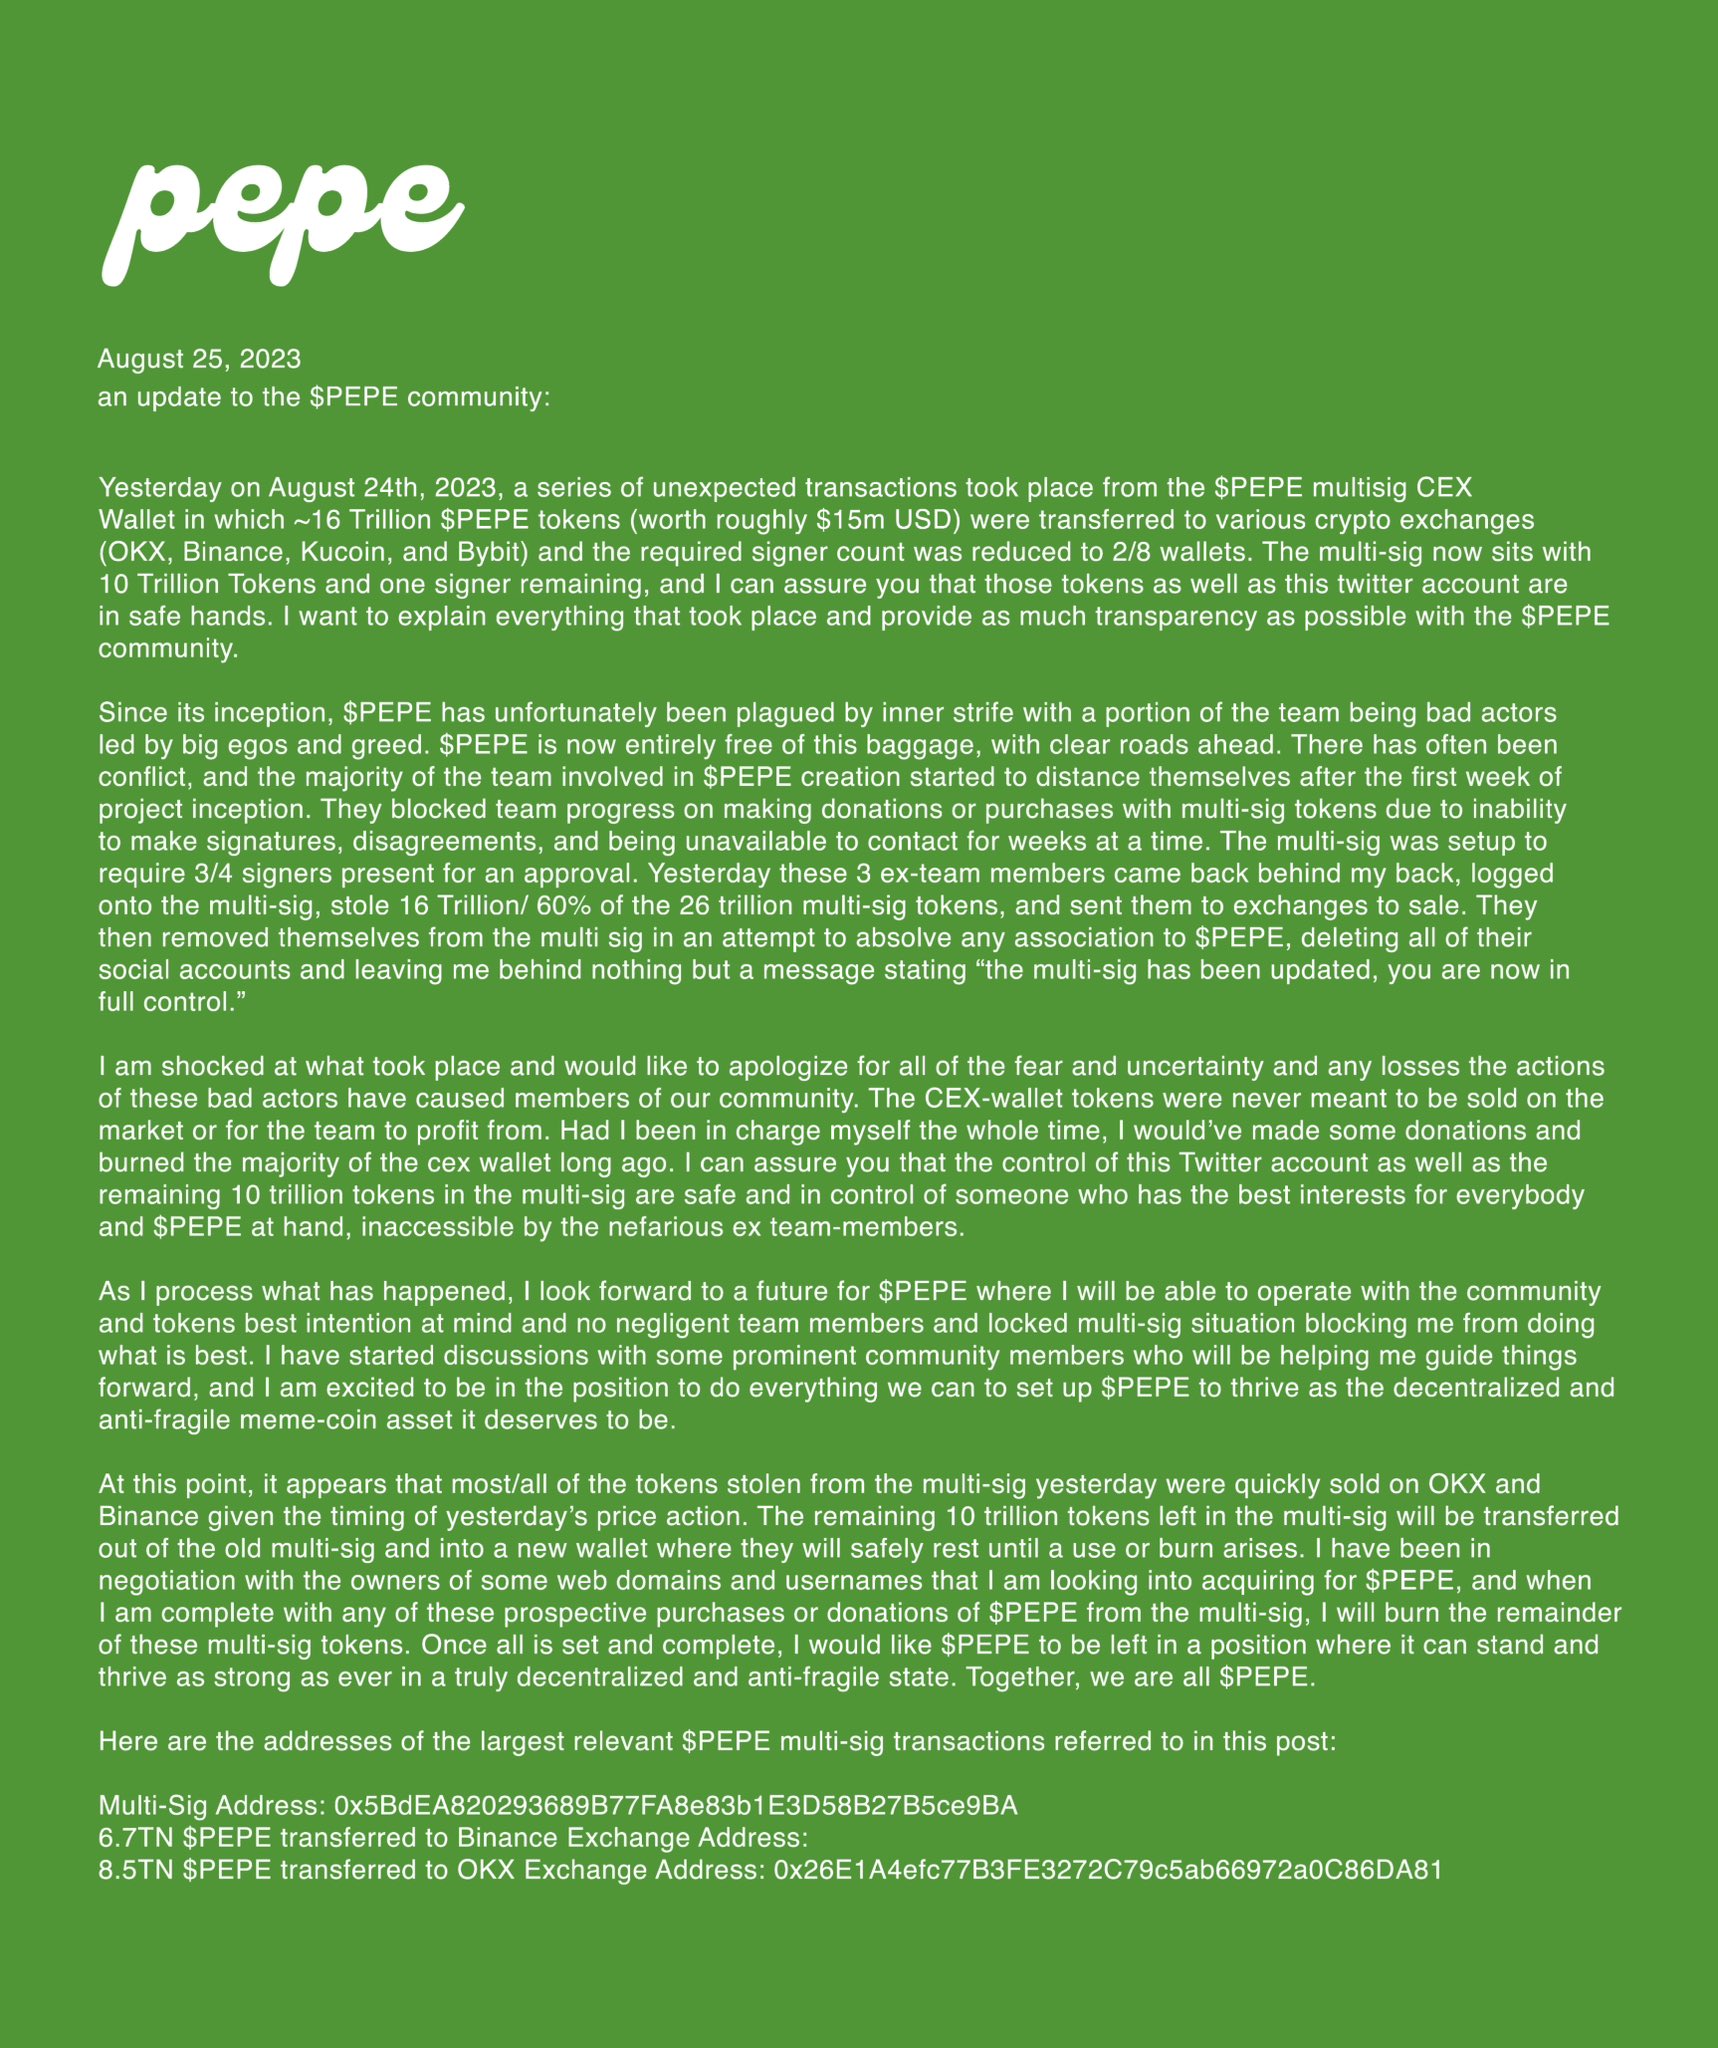 Carta aberta da comunidade Pepe para os investidores